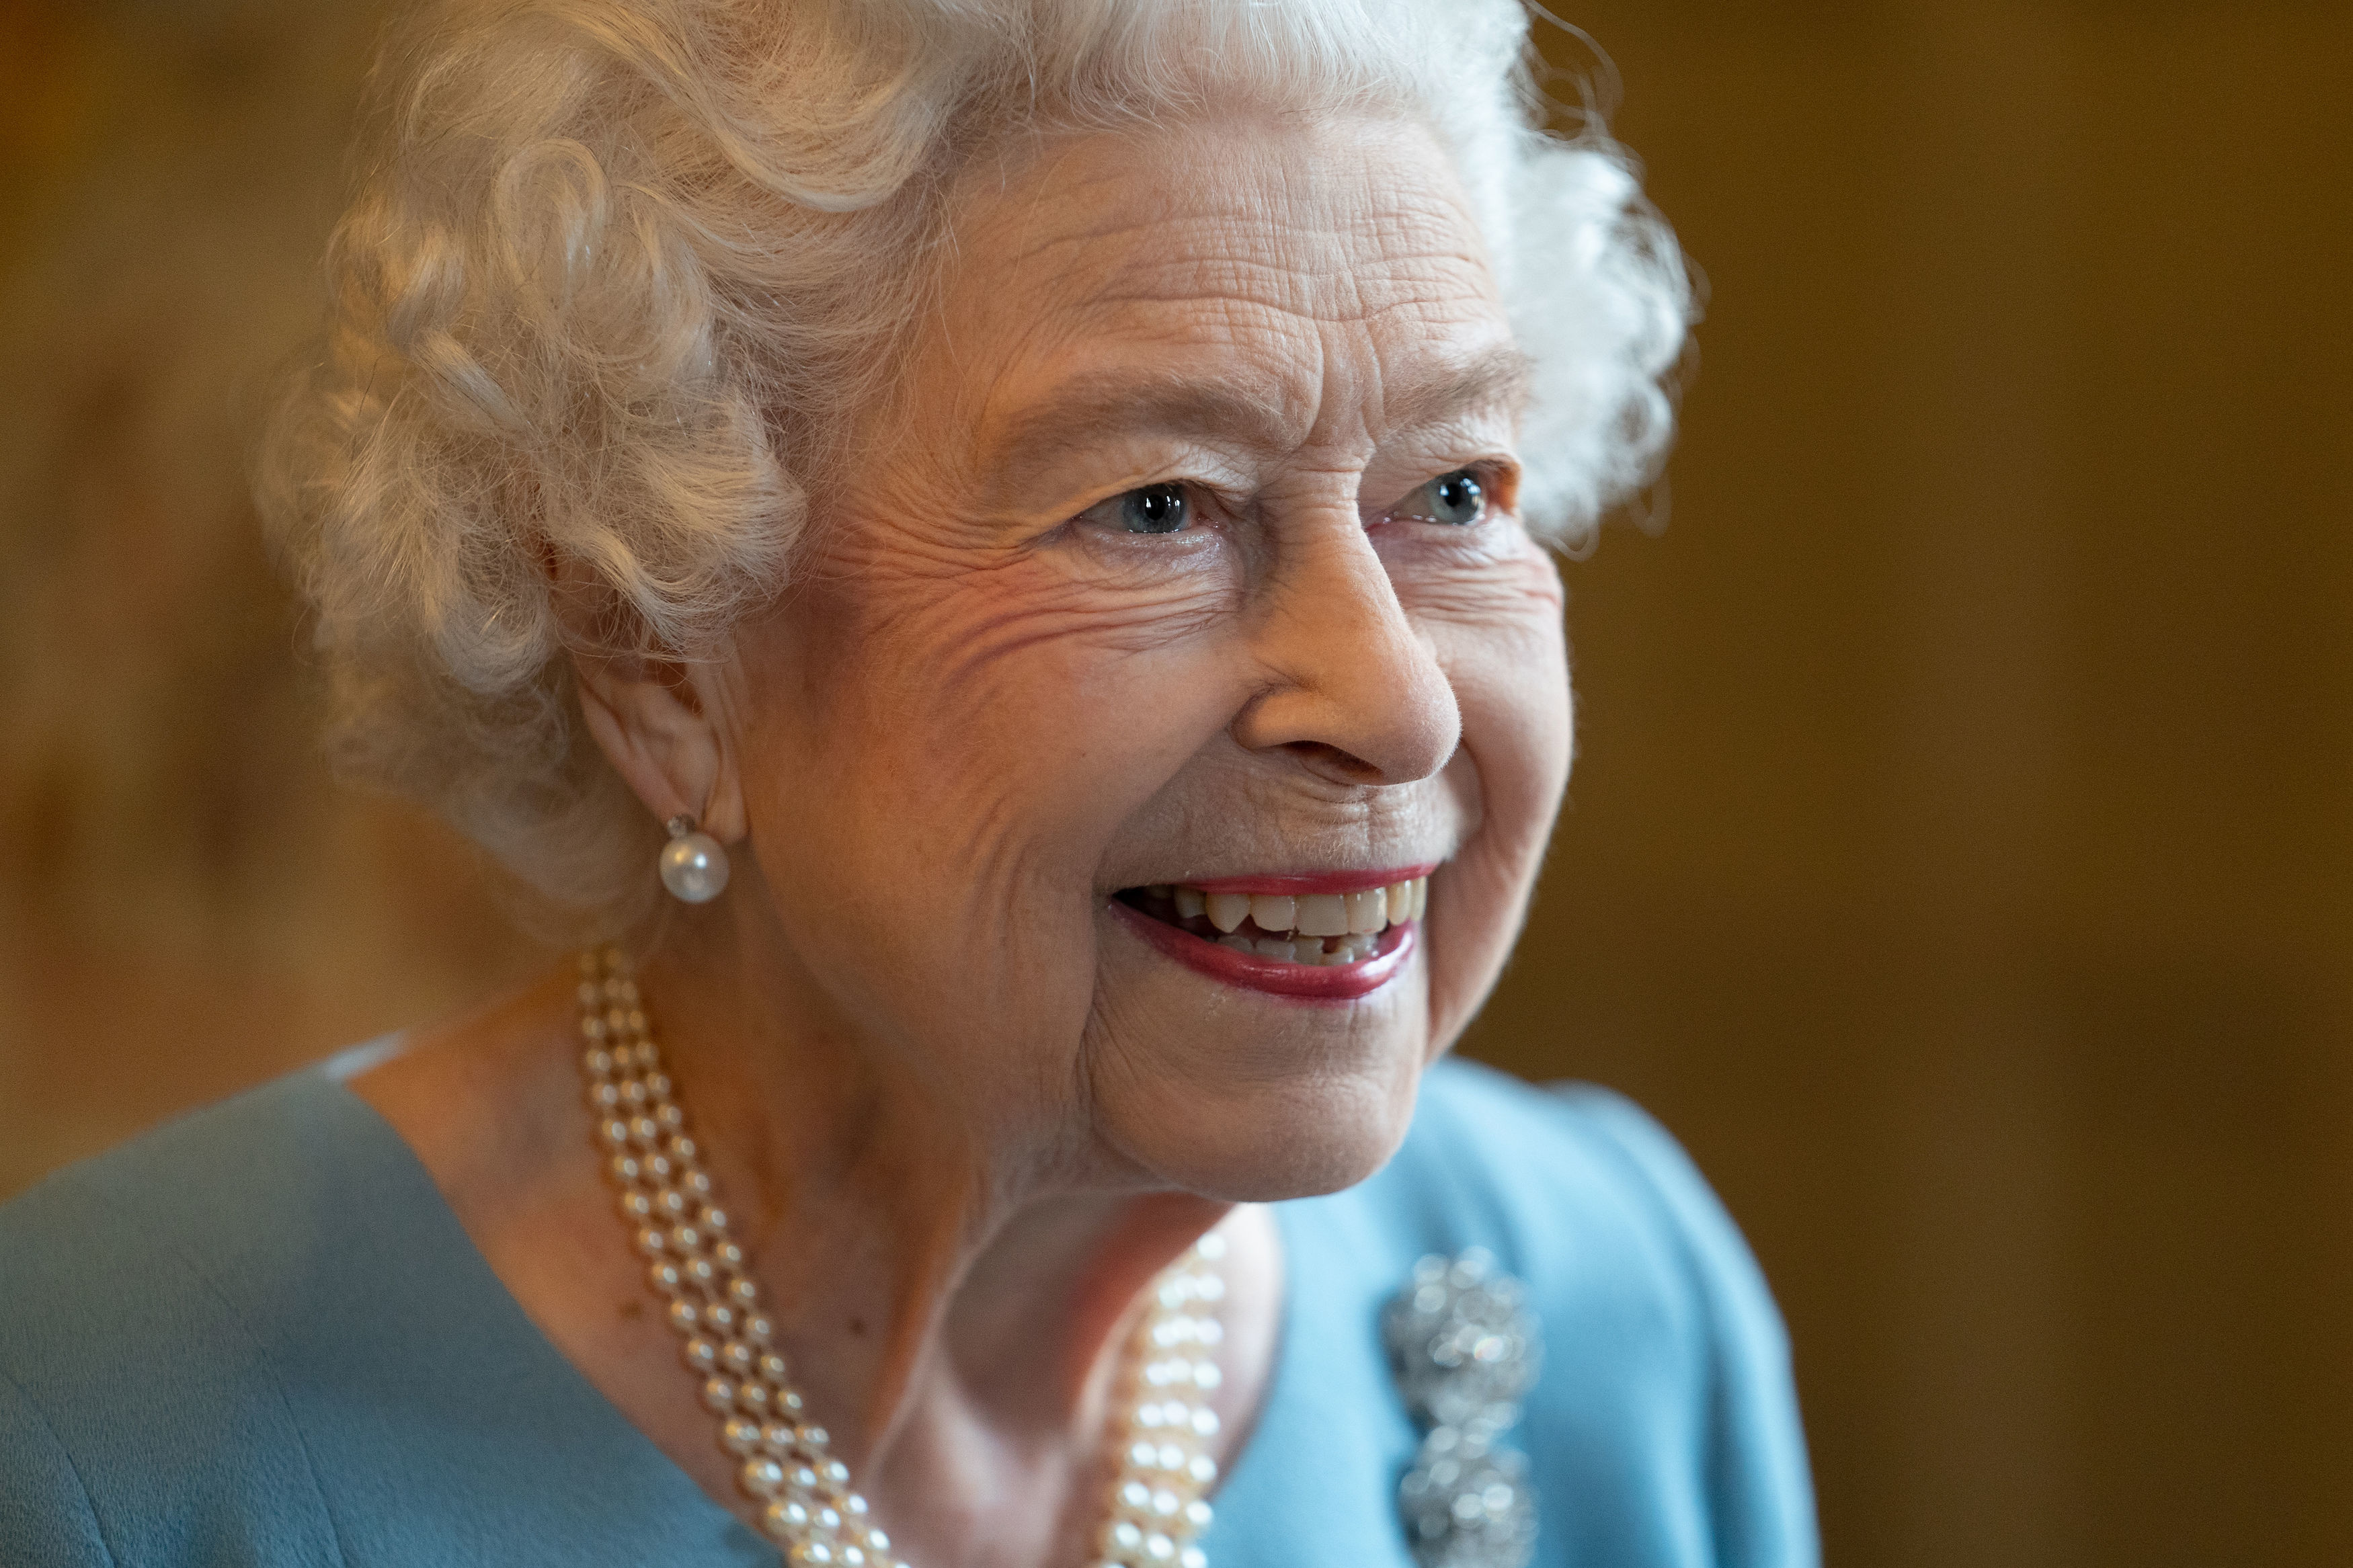 The Queen Elizabeth